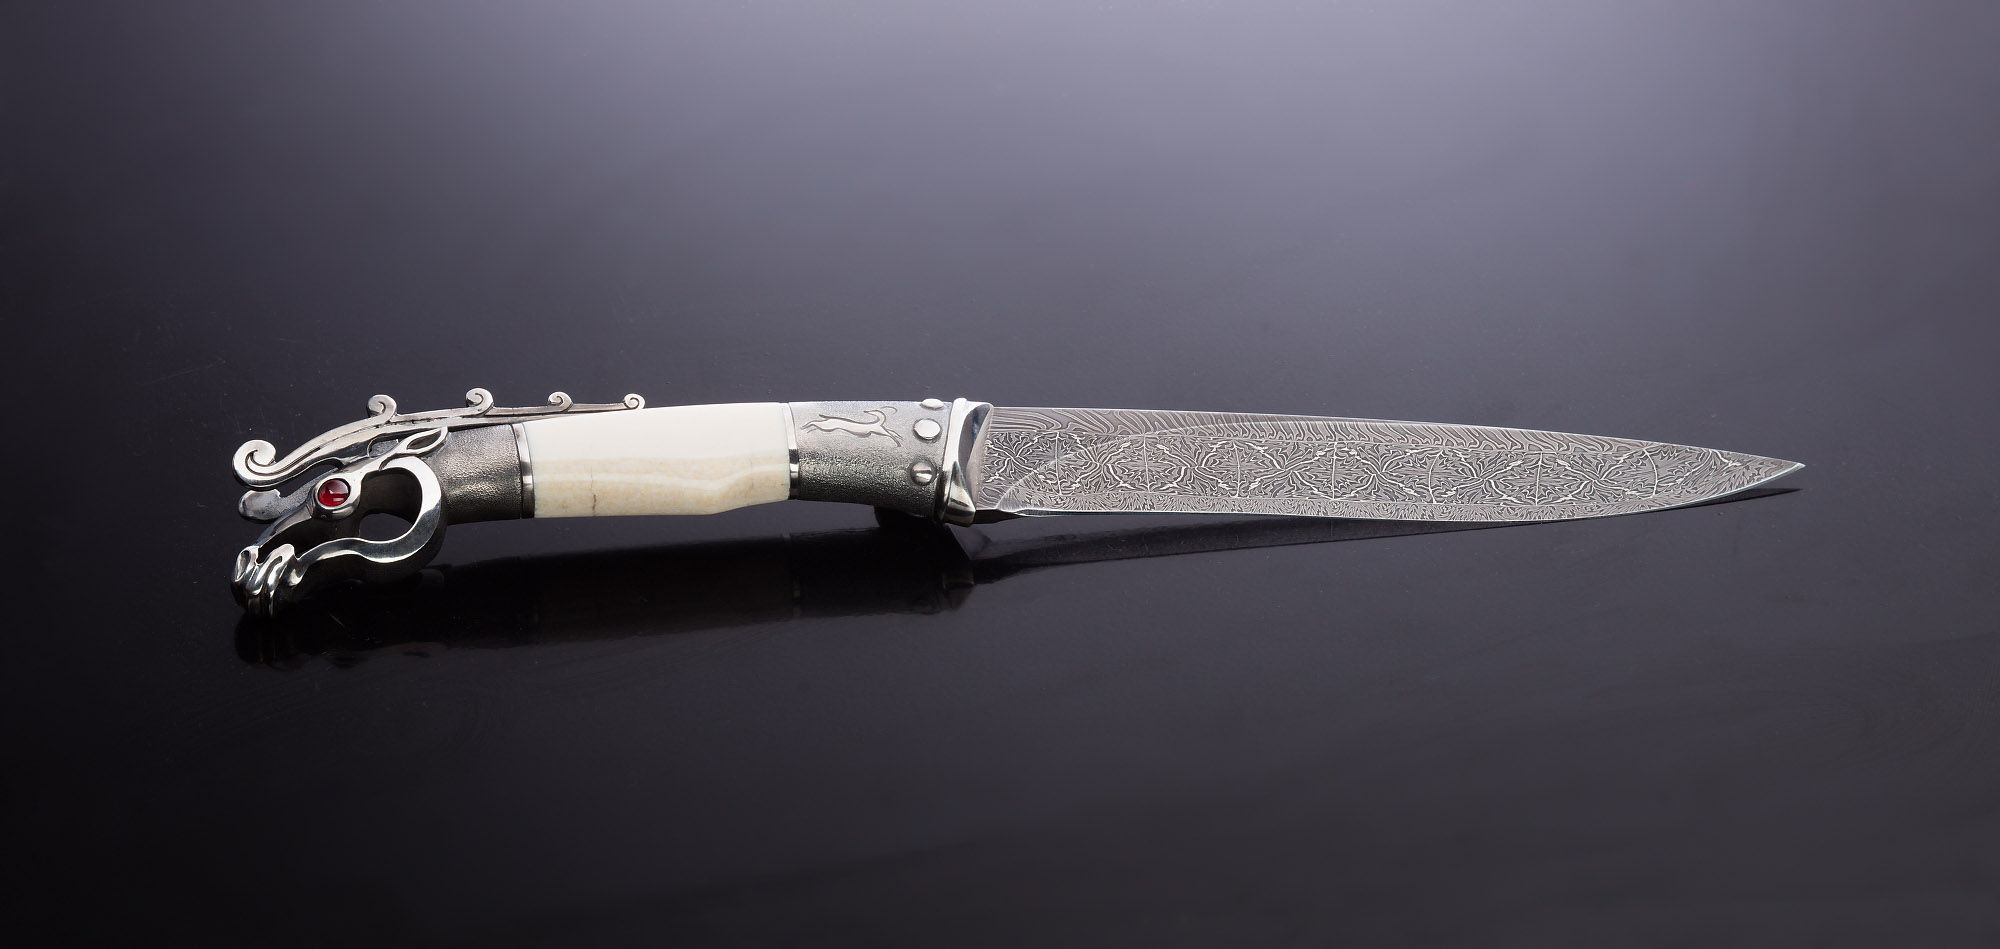 Нож "Олень" из коллекции "Скифы" от мастерской Жигжита Баясхаланова из Улан-Удэ